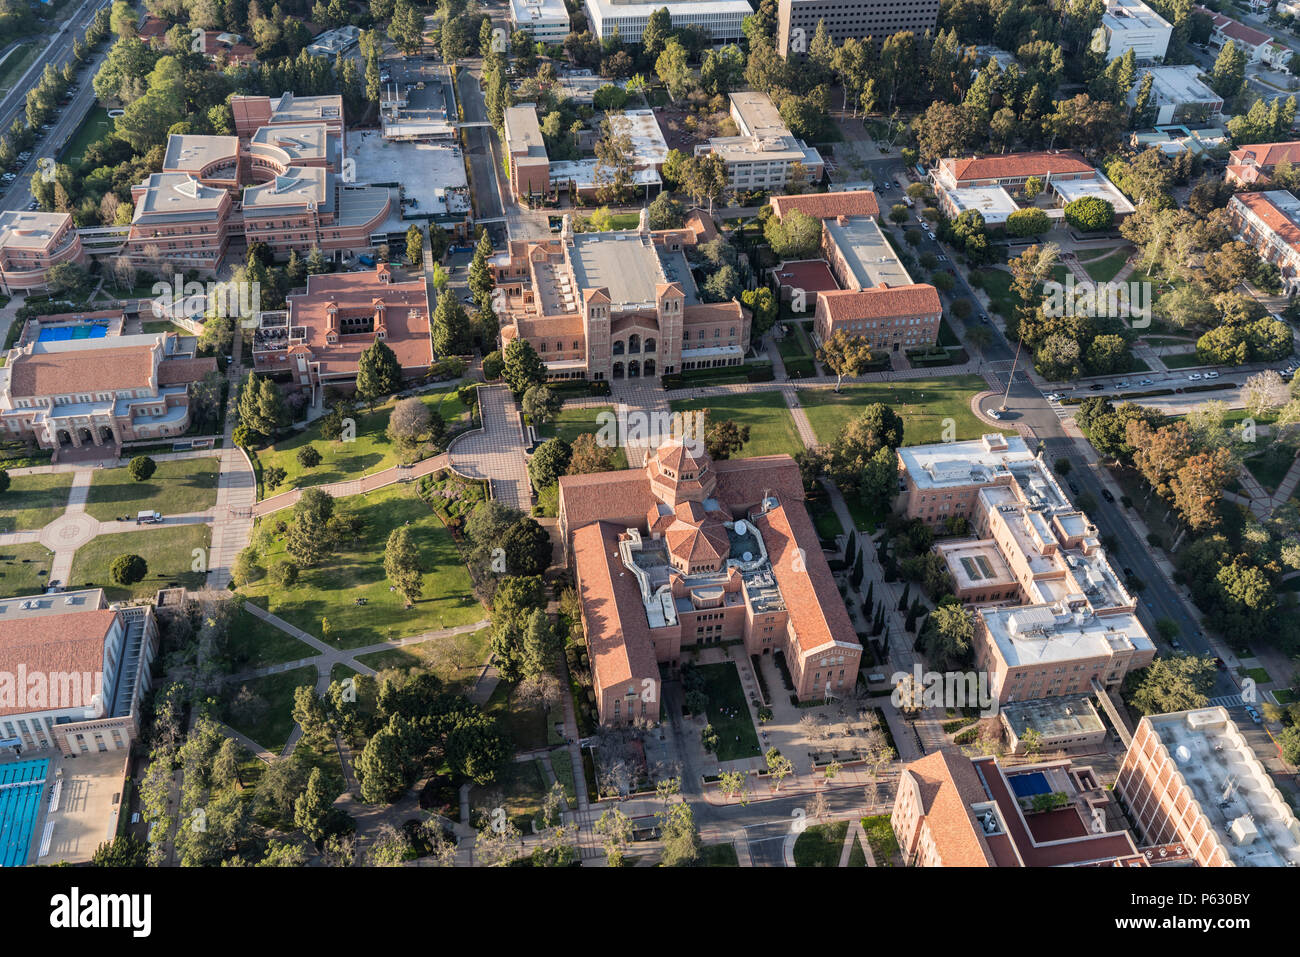 Los Angeles, Kalifornien, USA - 18. April 2018: Antenne Überblick über historische UCLA Campus Gebäude in der Nähe von Westwood. Stockfoto